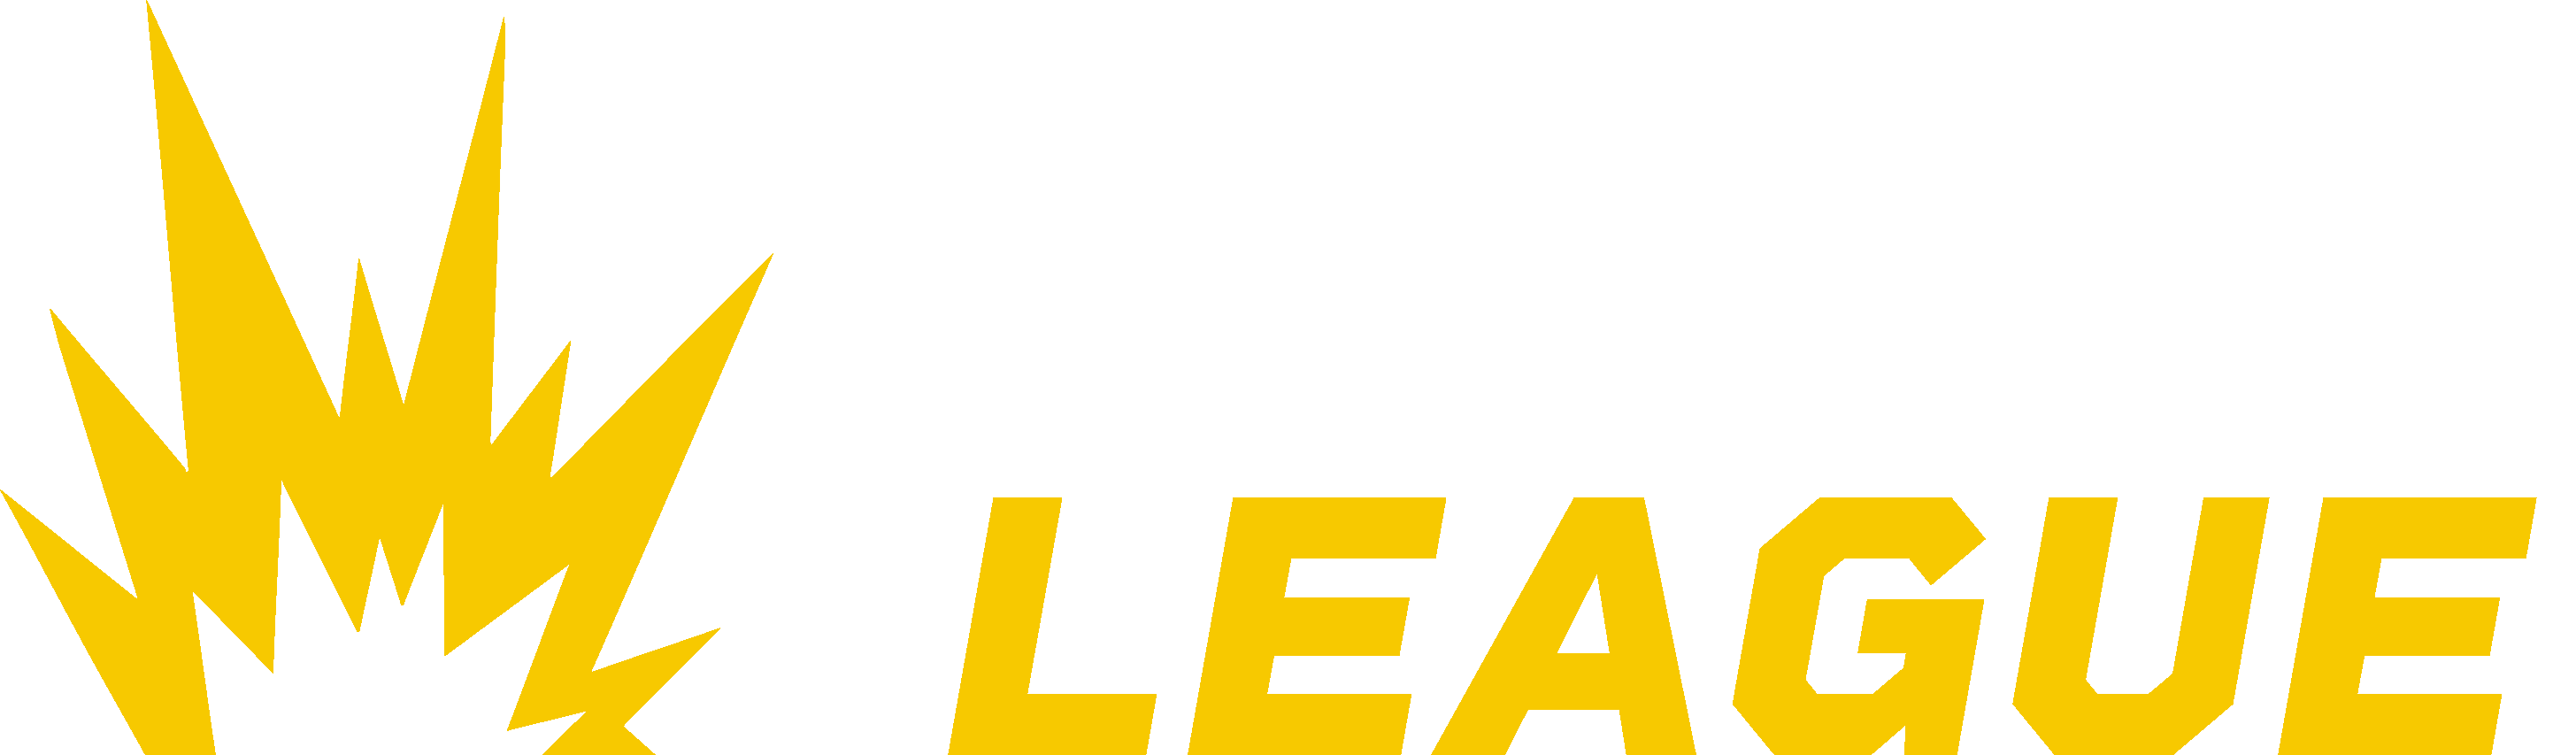 Demolition League